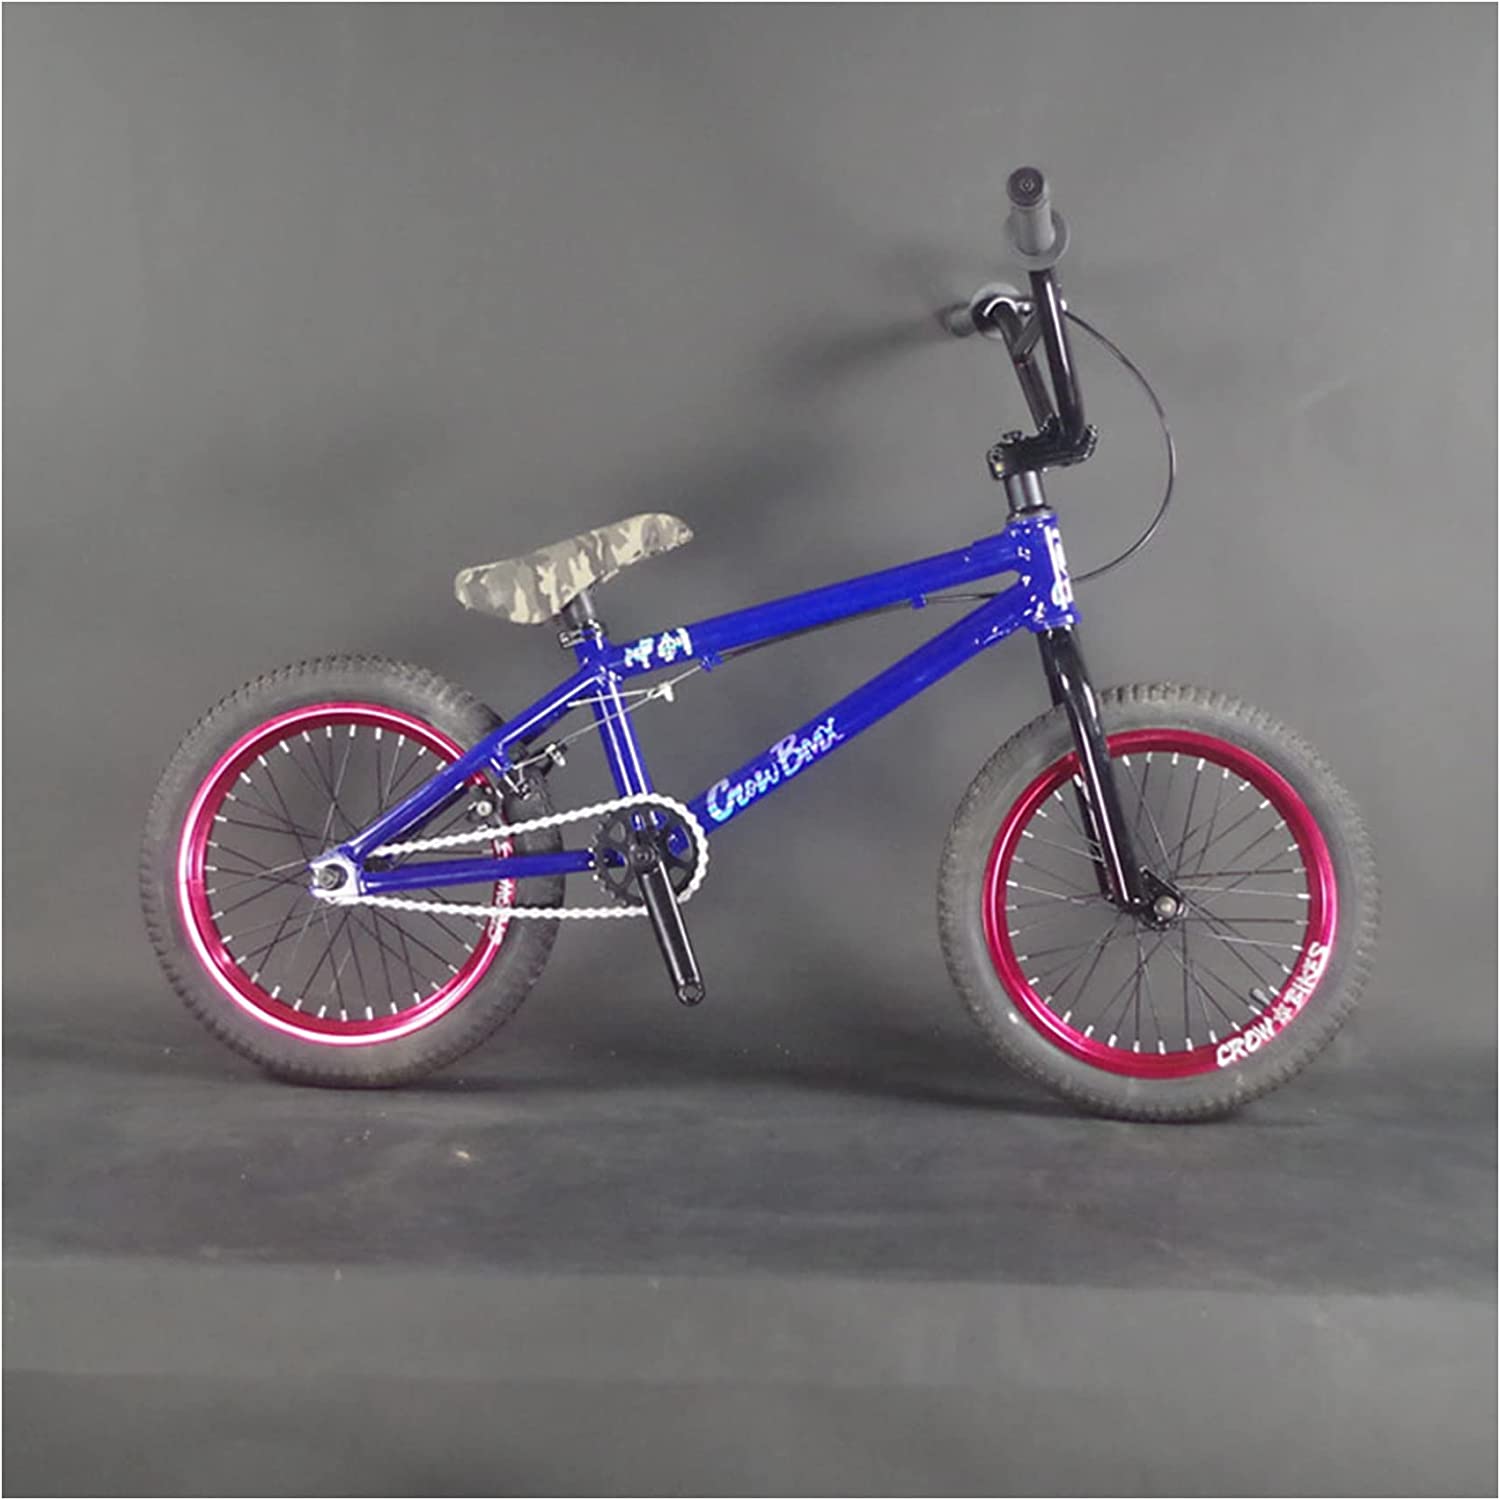 16インチ バイク BMX自転車 mini BMX軽量 おしゃれ キッズバイク 子供用自転車 アクロバット自転車street bmx 自転車  ブレーキシステム付き 子供 幼児用 バイク